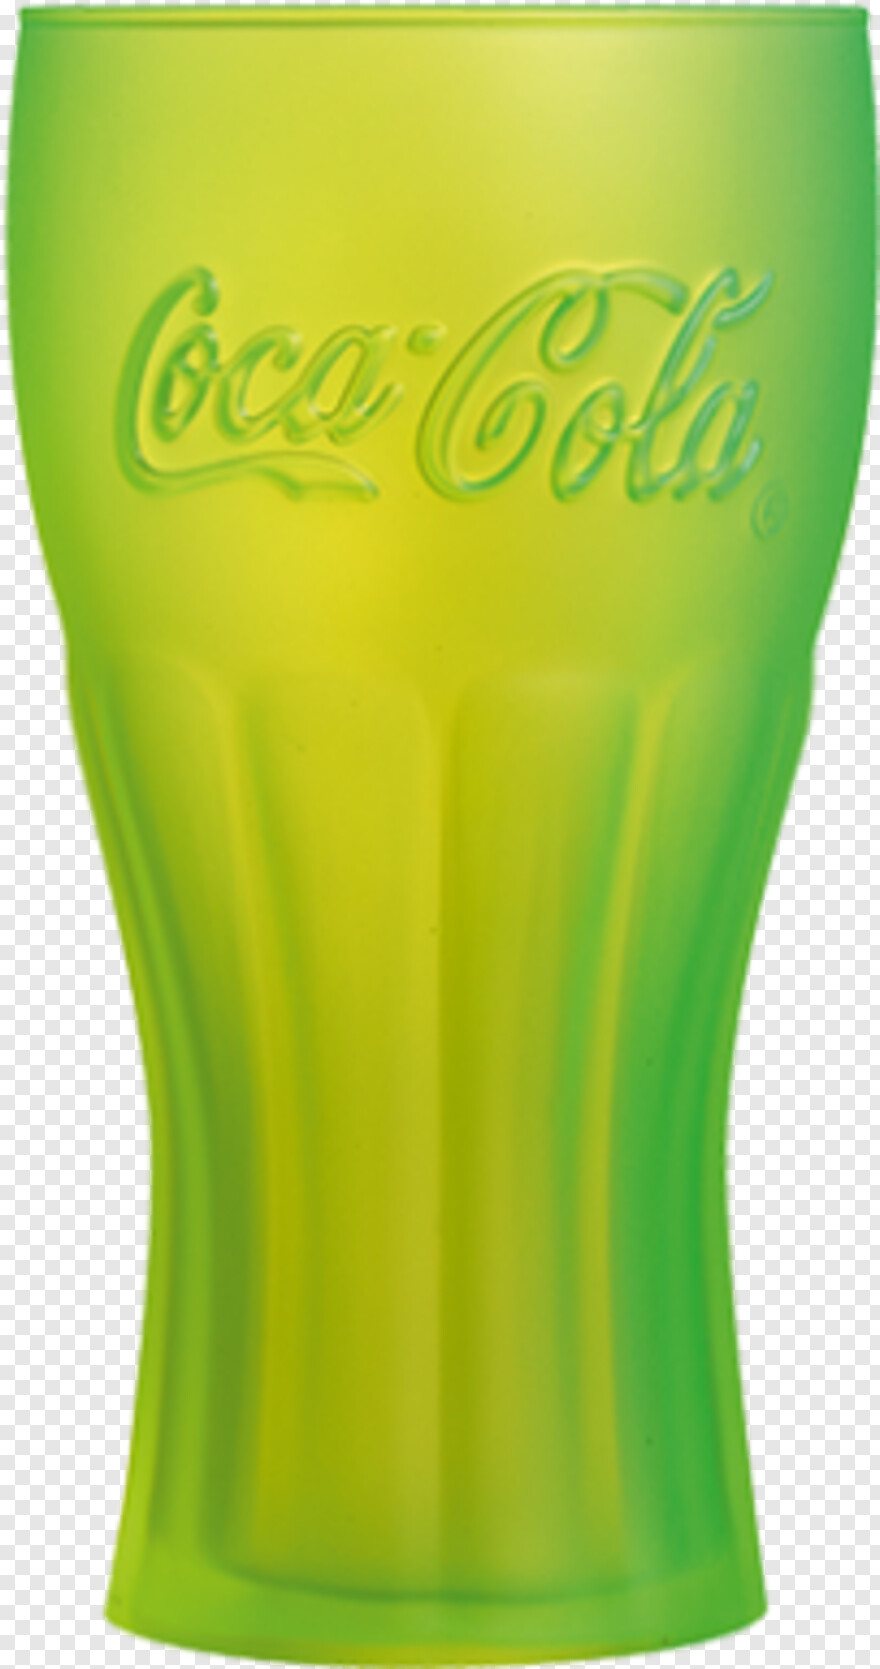 coca-cola-can # 380503